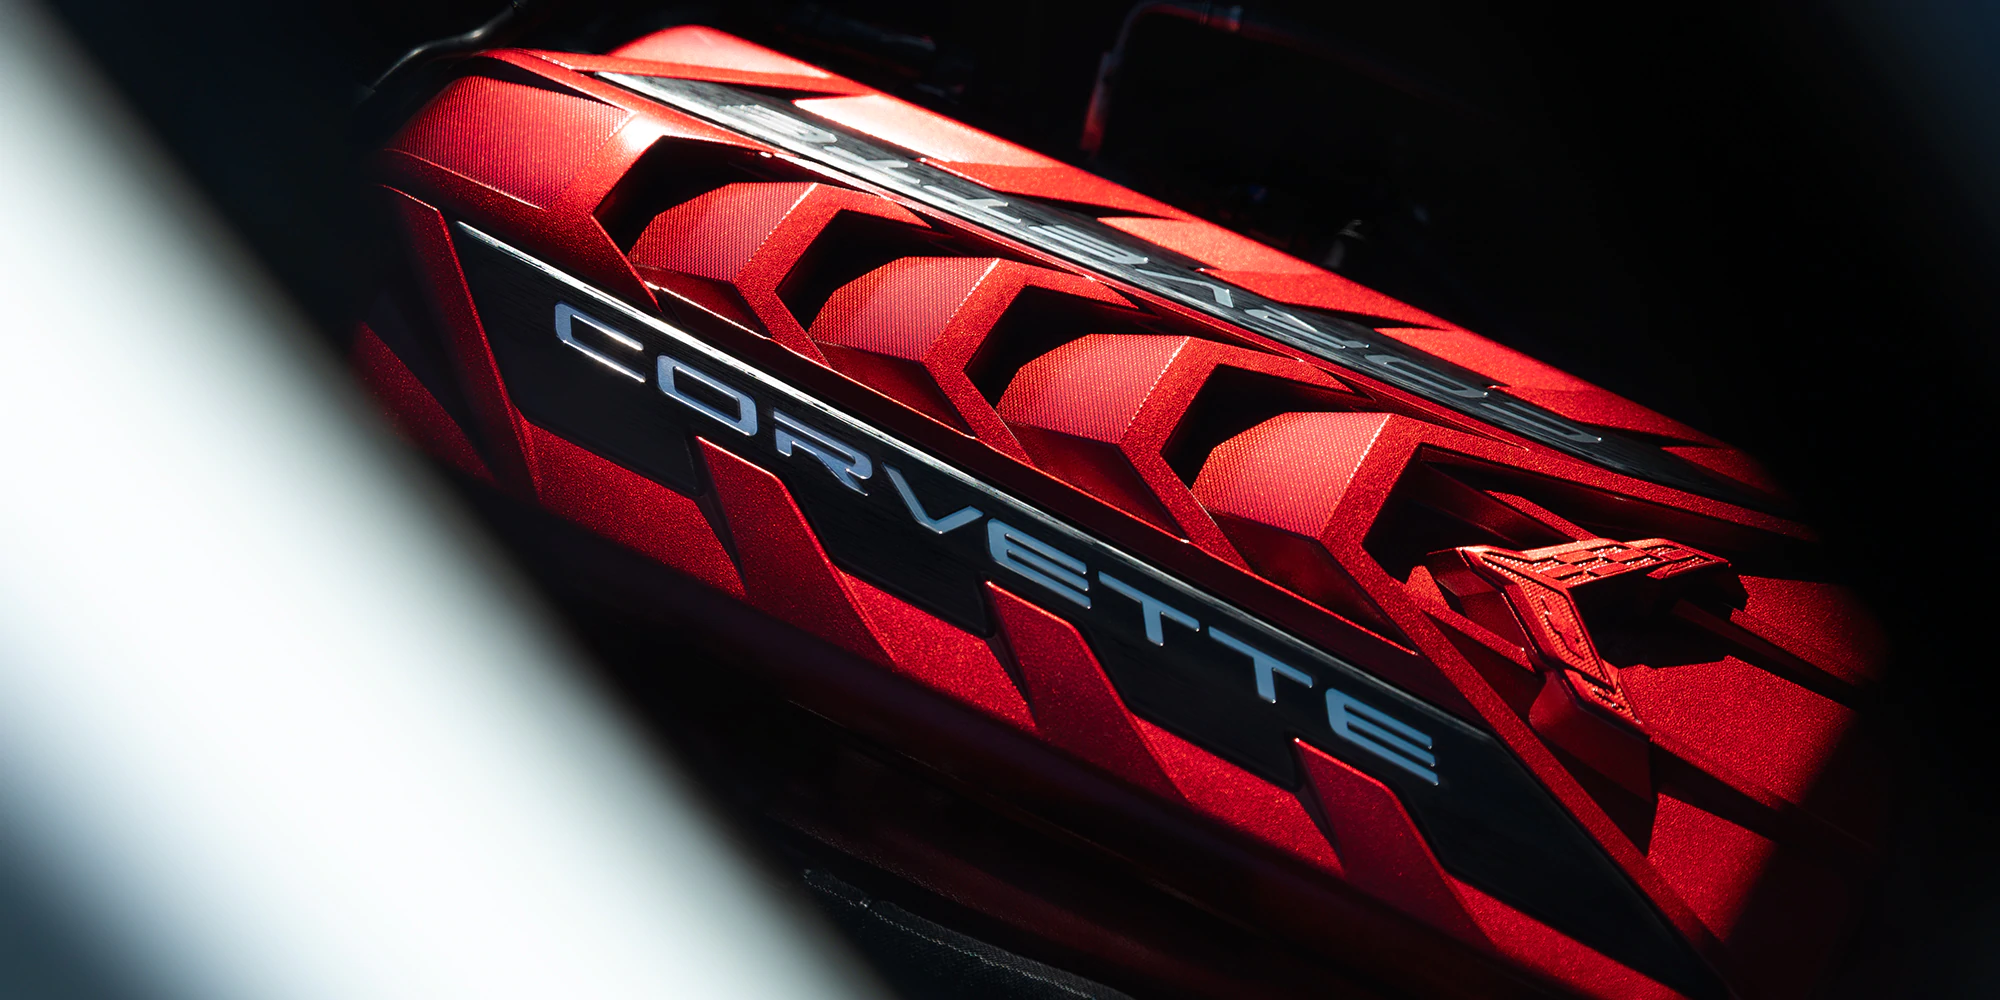 2020 Corvette Engine Cover